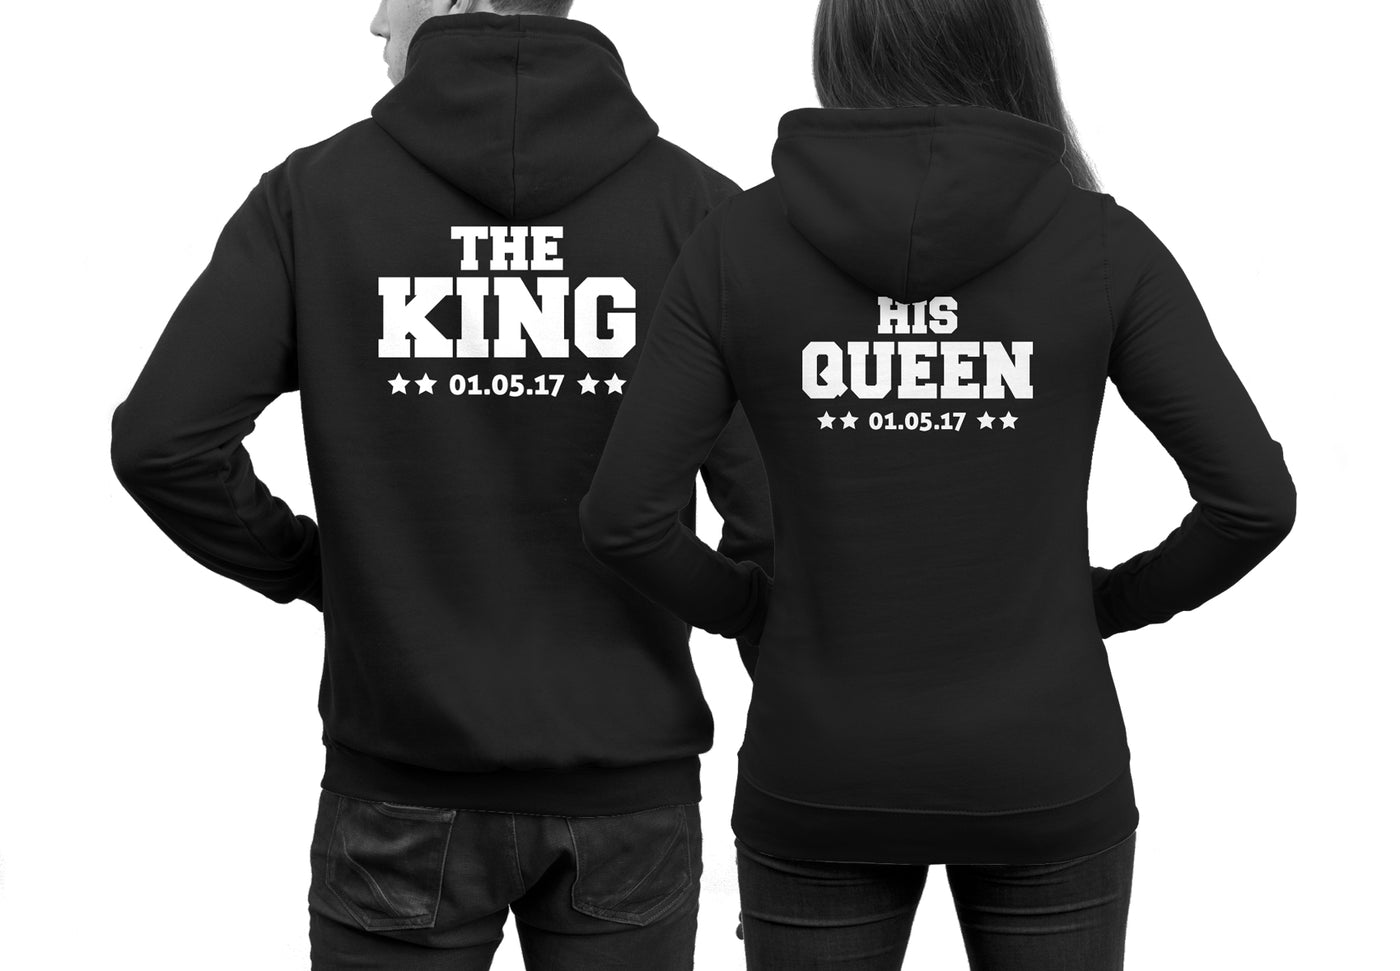 the-king-his-queen-hoodies-ft61hod